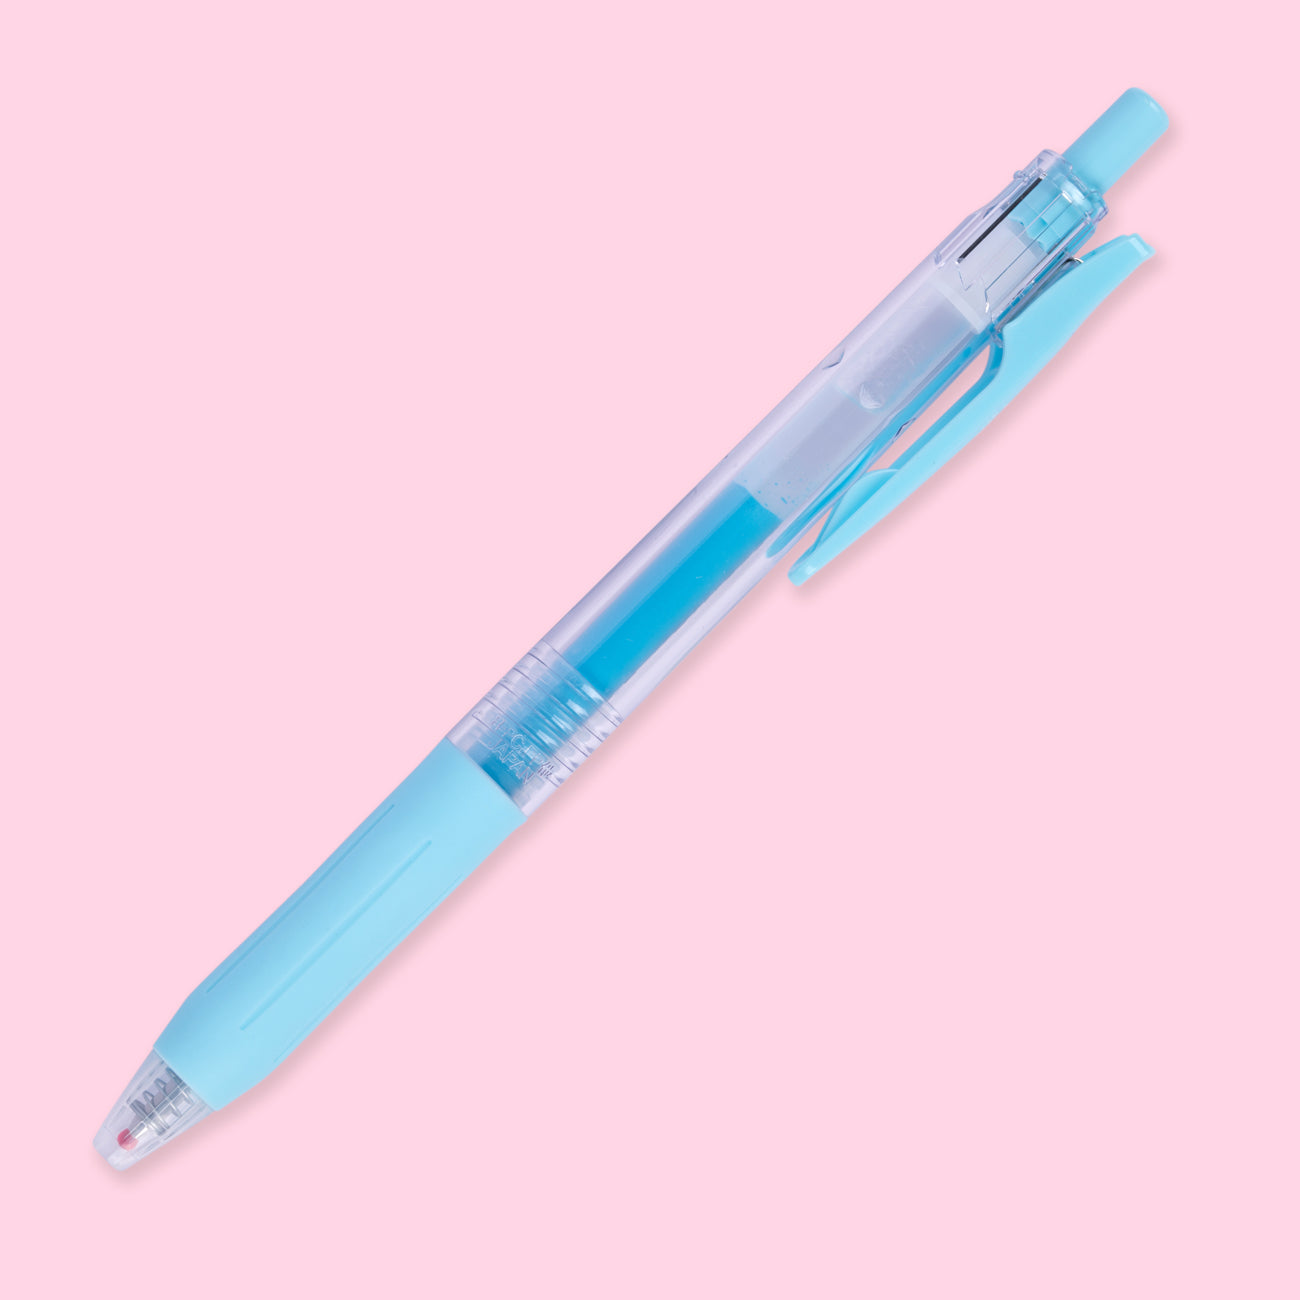 Zebra Sarasa Clip Milky Colors - Tokyo Pen Shop